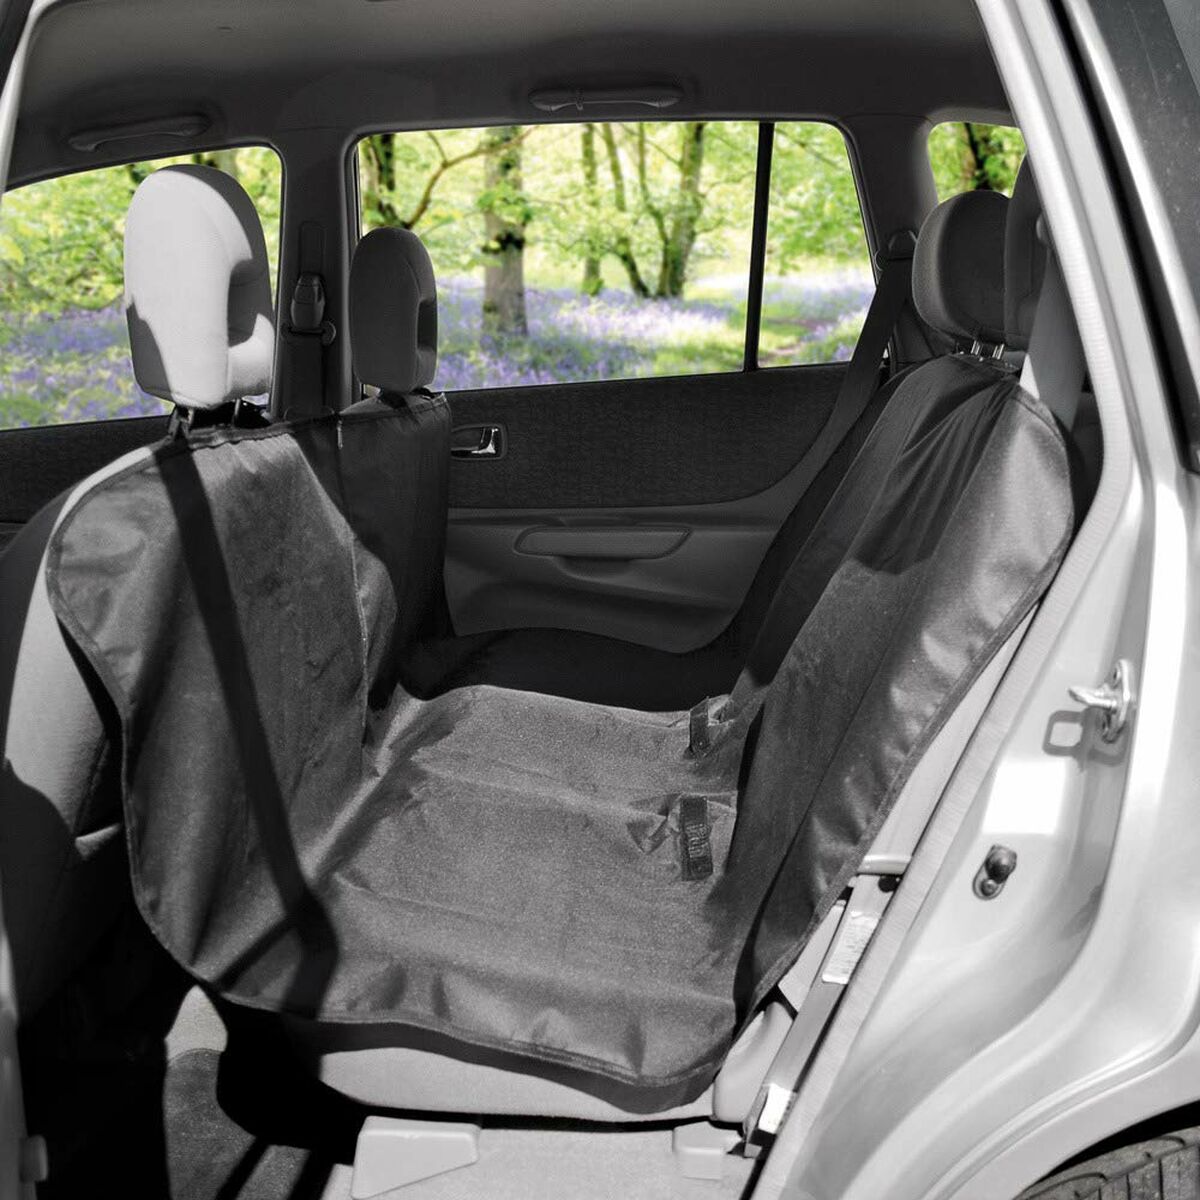 Protector asiento de coche 135x145 cm negro poliester